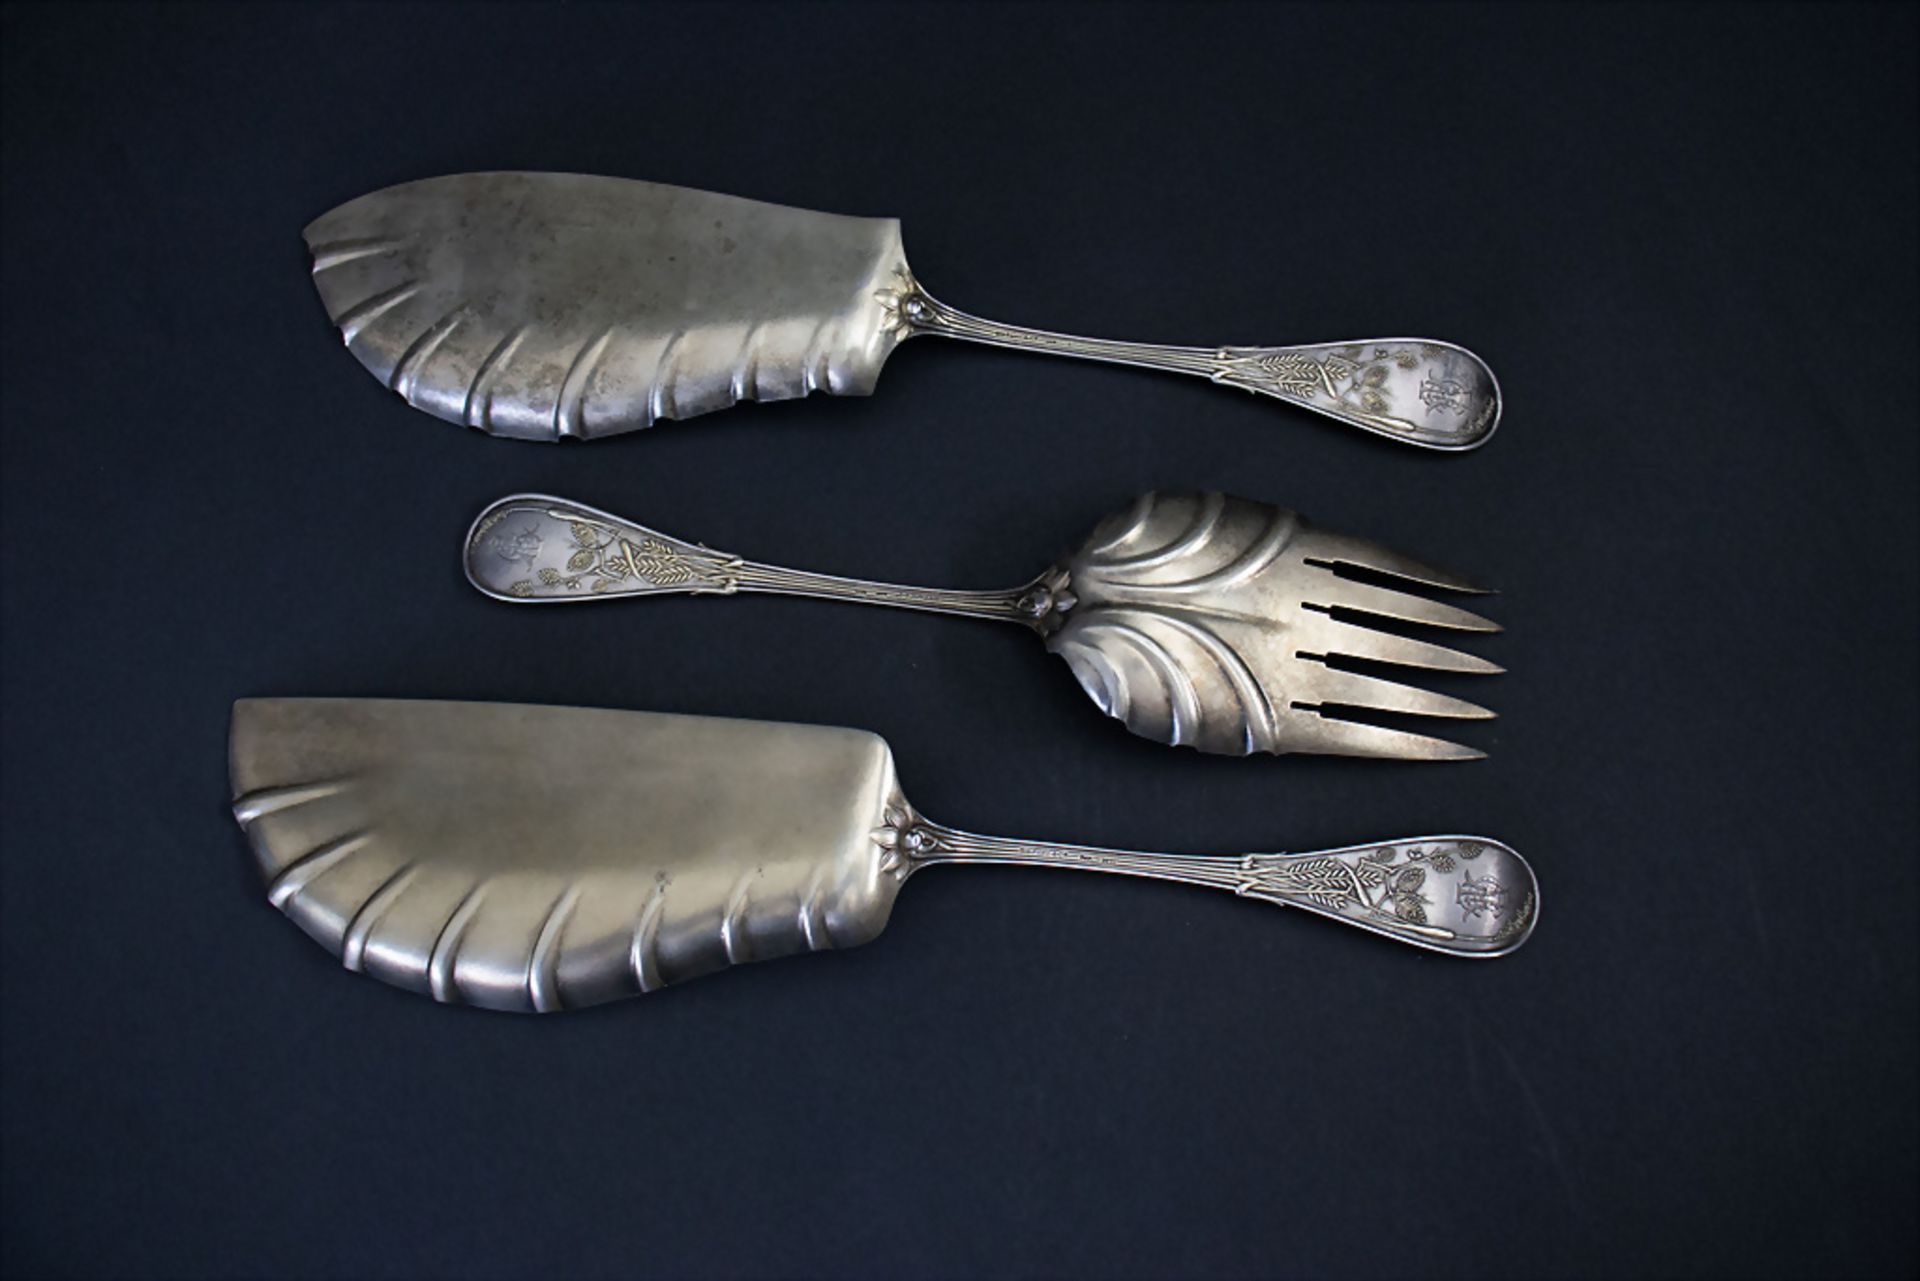 3 Teile Vorlegebesteck / 3 pieces of silver serving cutlery, Tiffany, um 1890 - Bild 3 aus 10